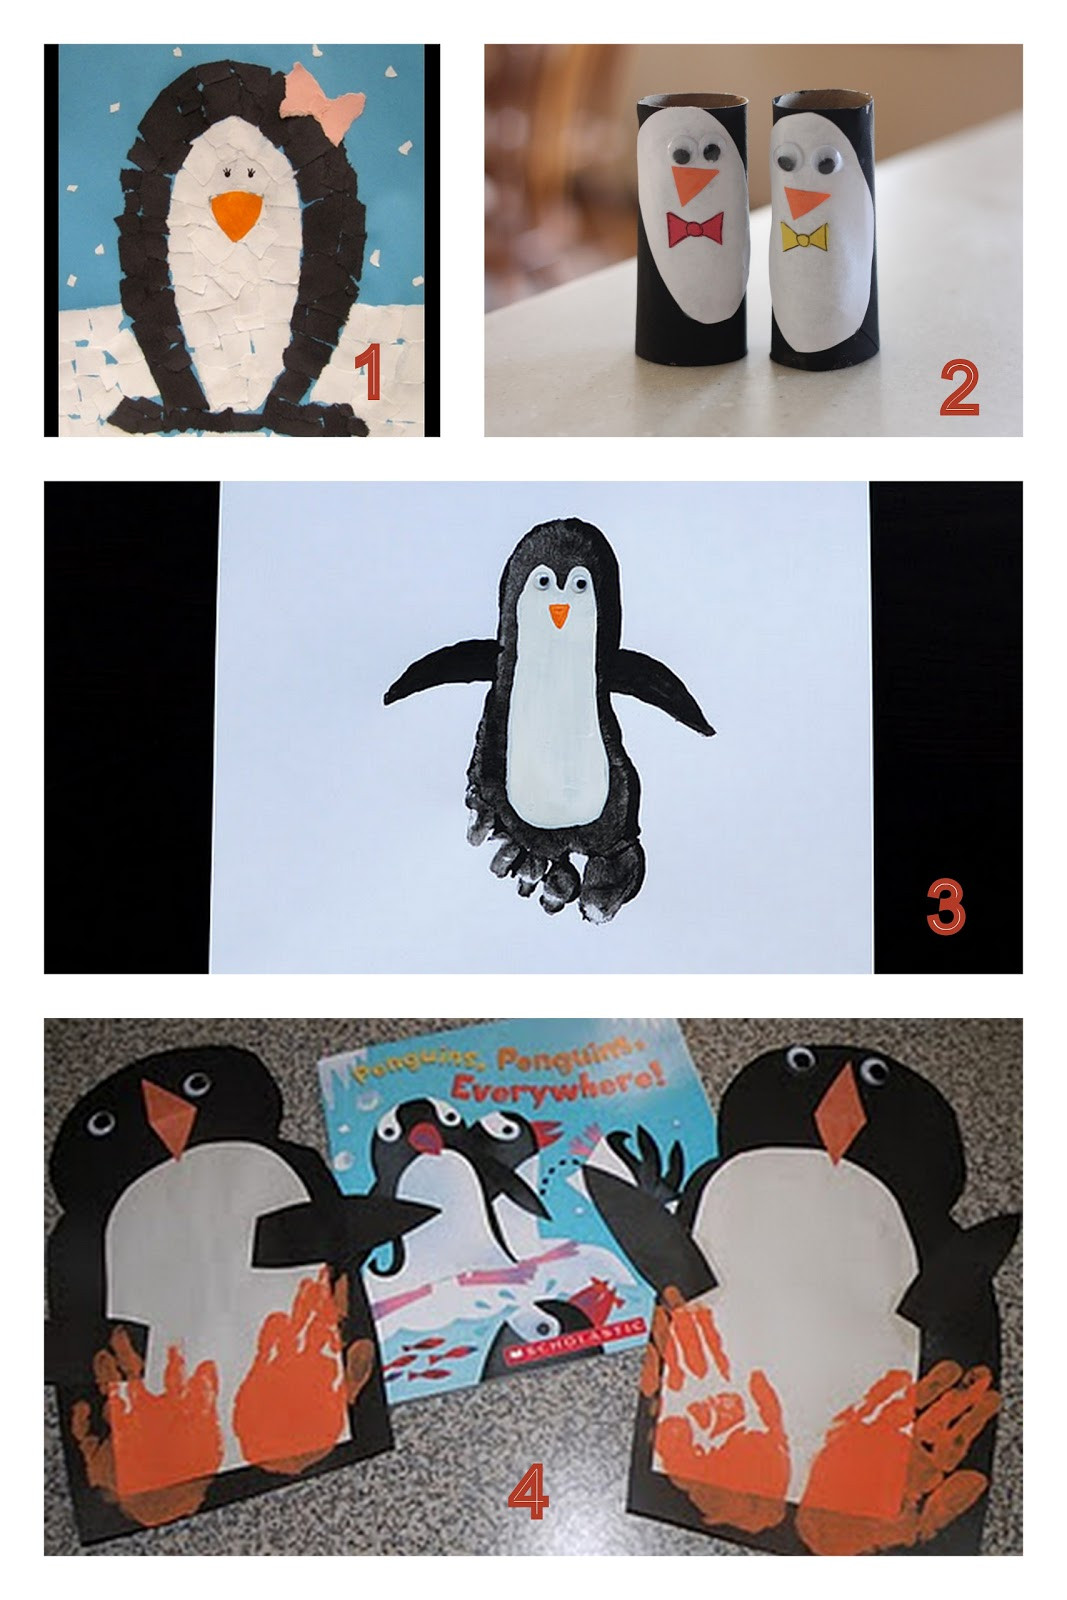 Penguin Craft For Preschoolers
 Having Fun at Home Preschool Penguin Crafts